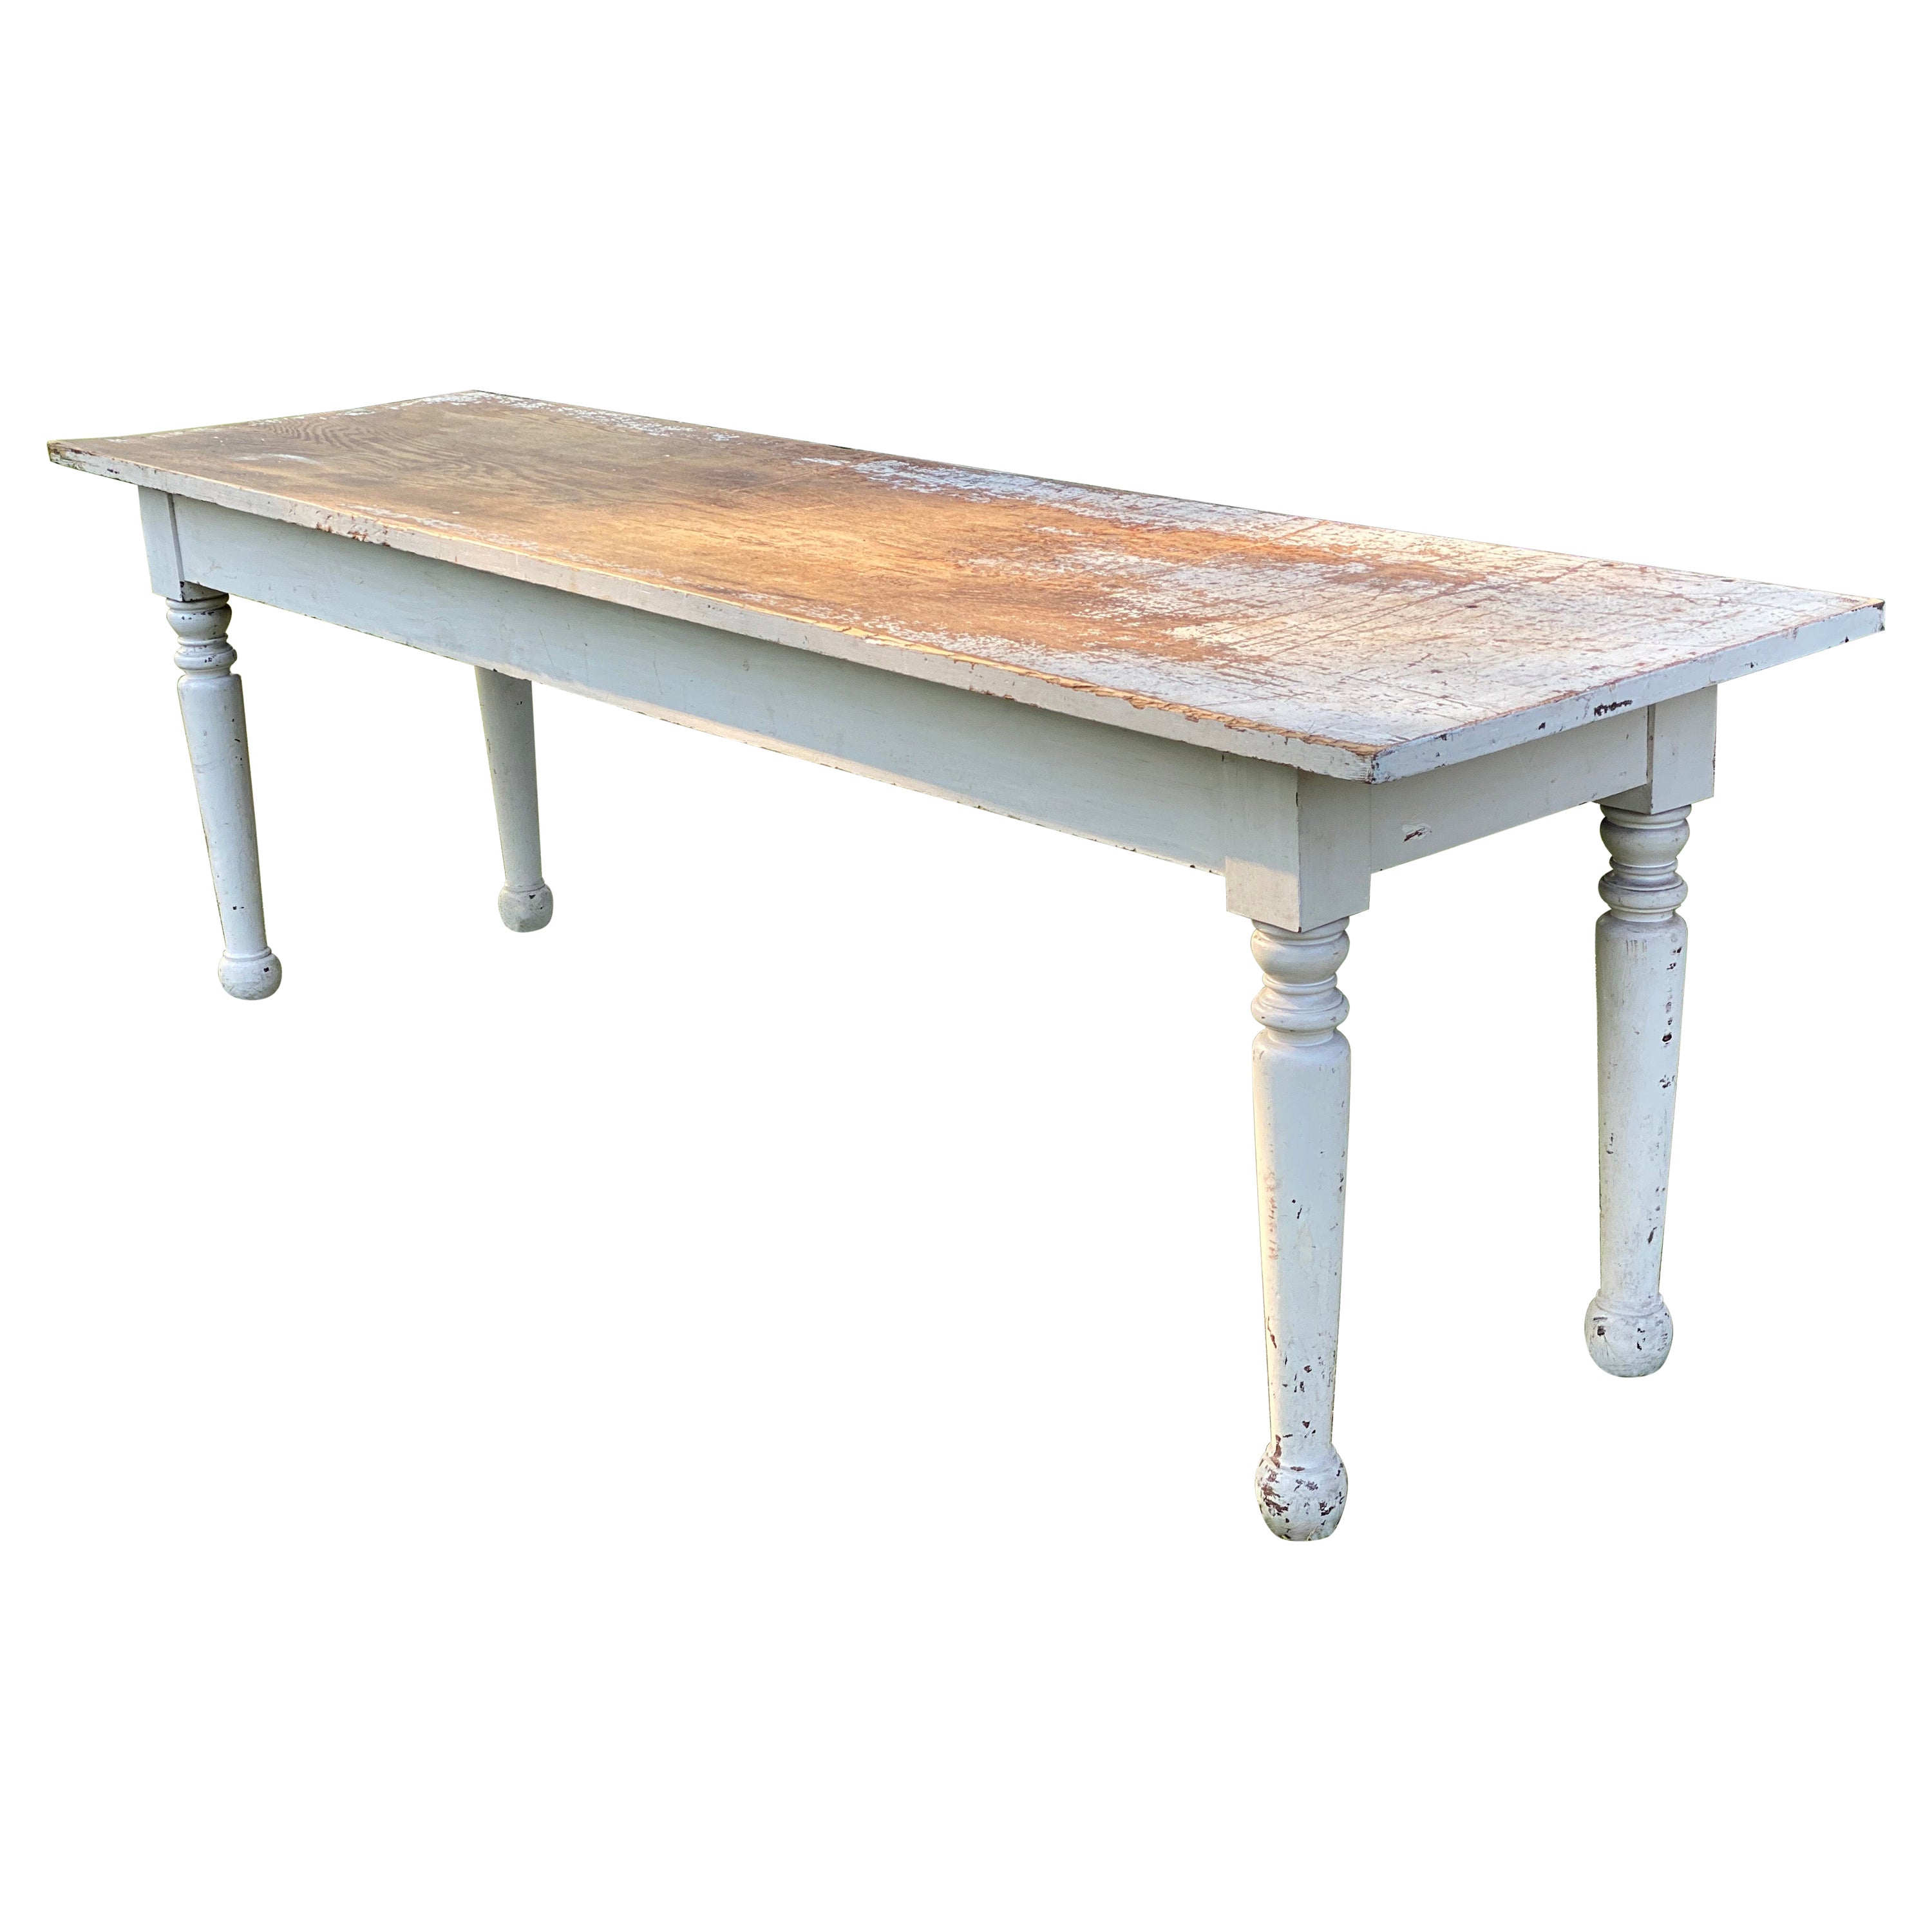 Table de ferme rustique longue et étroite peinte en blanc